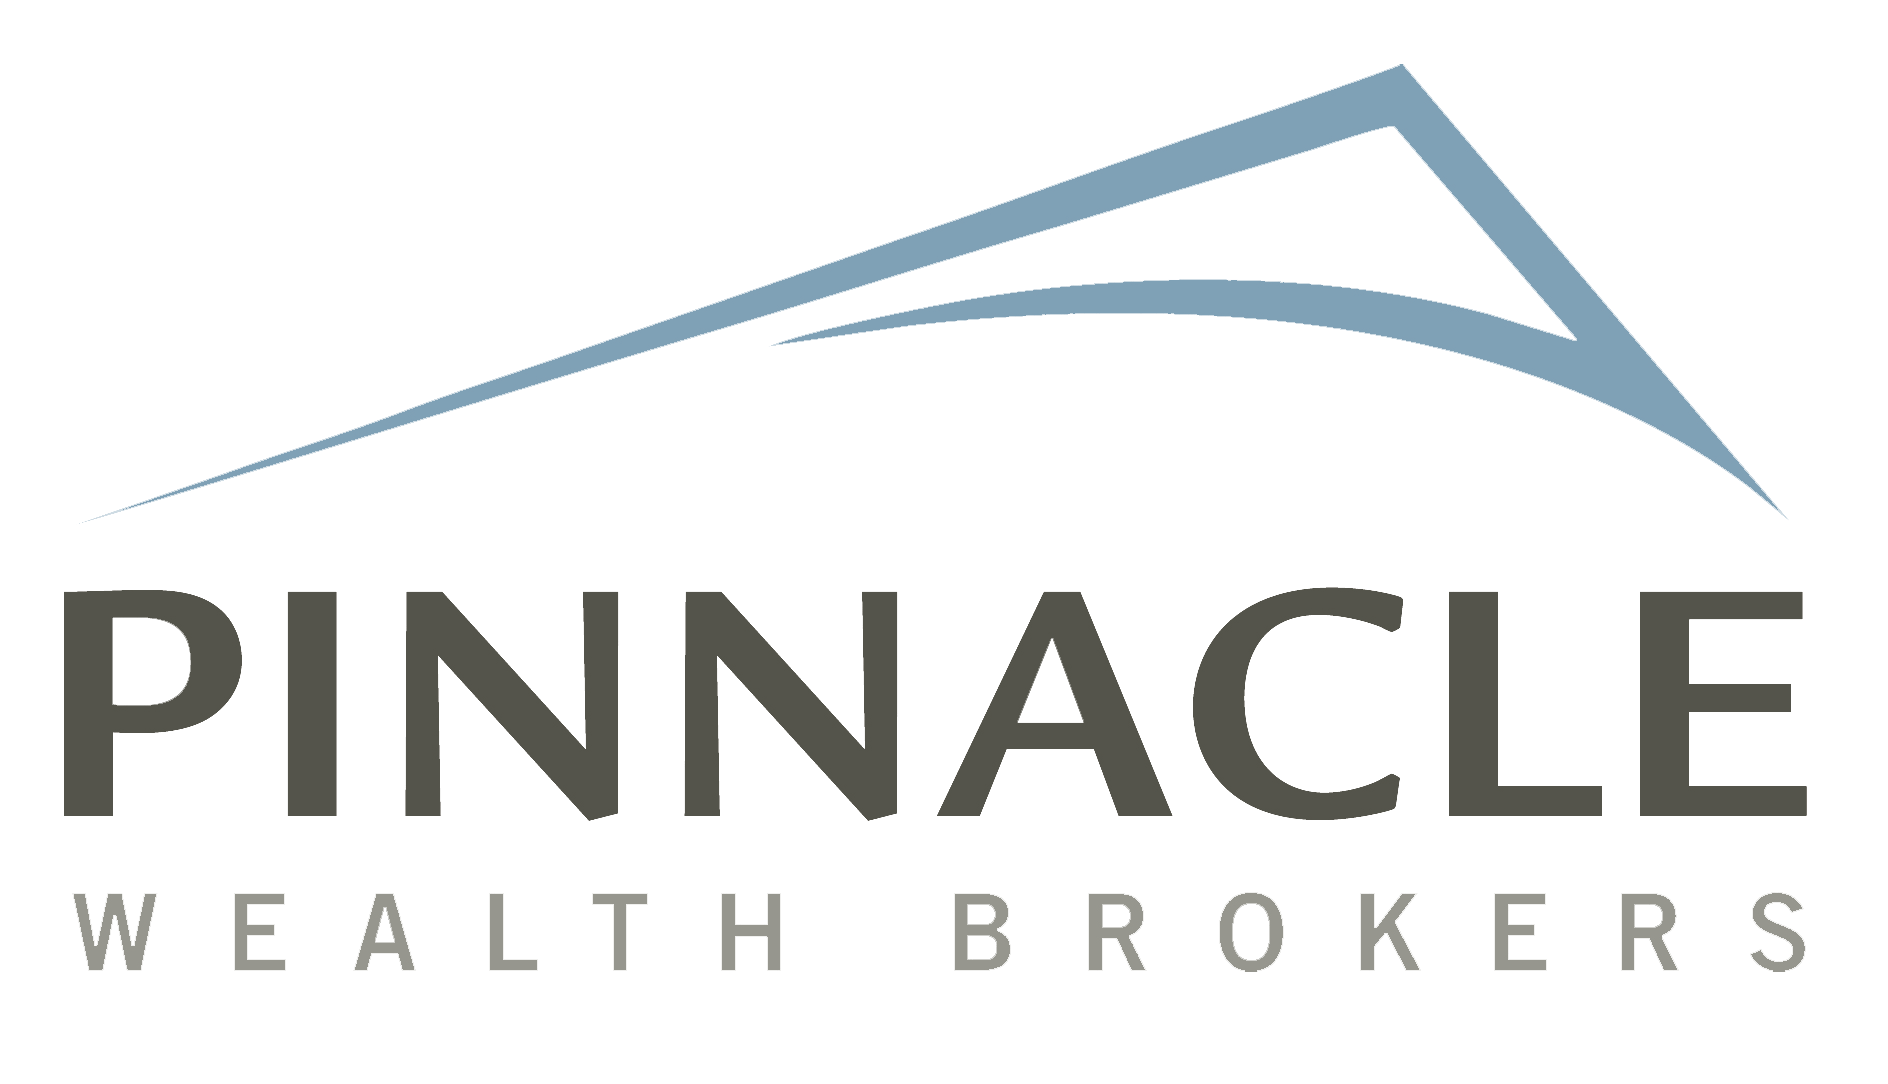 Pinnacle Wealth Brokers Inc.